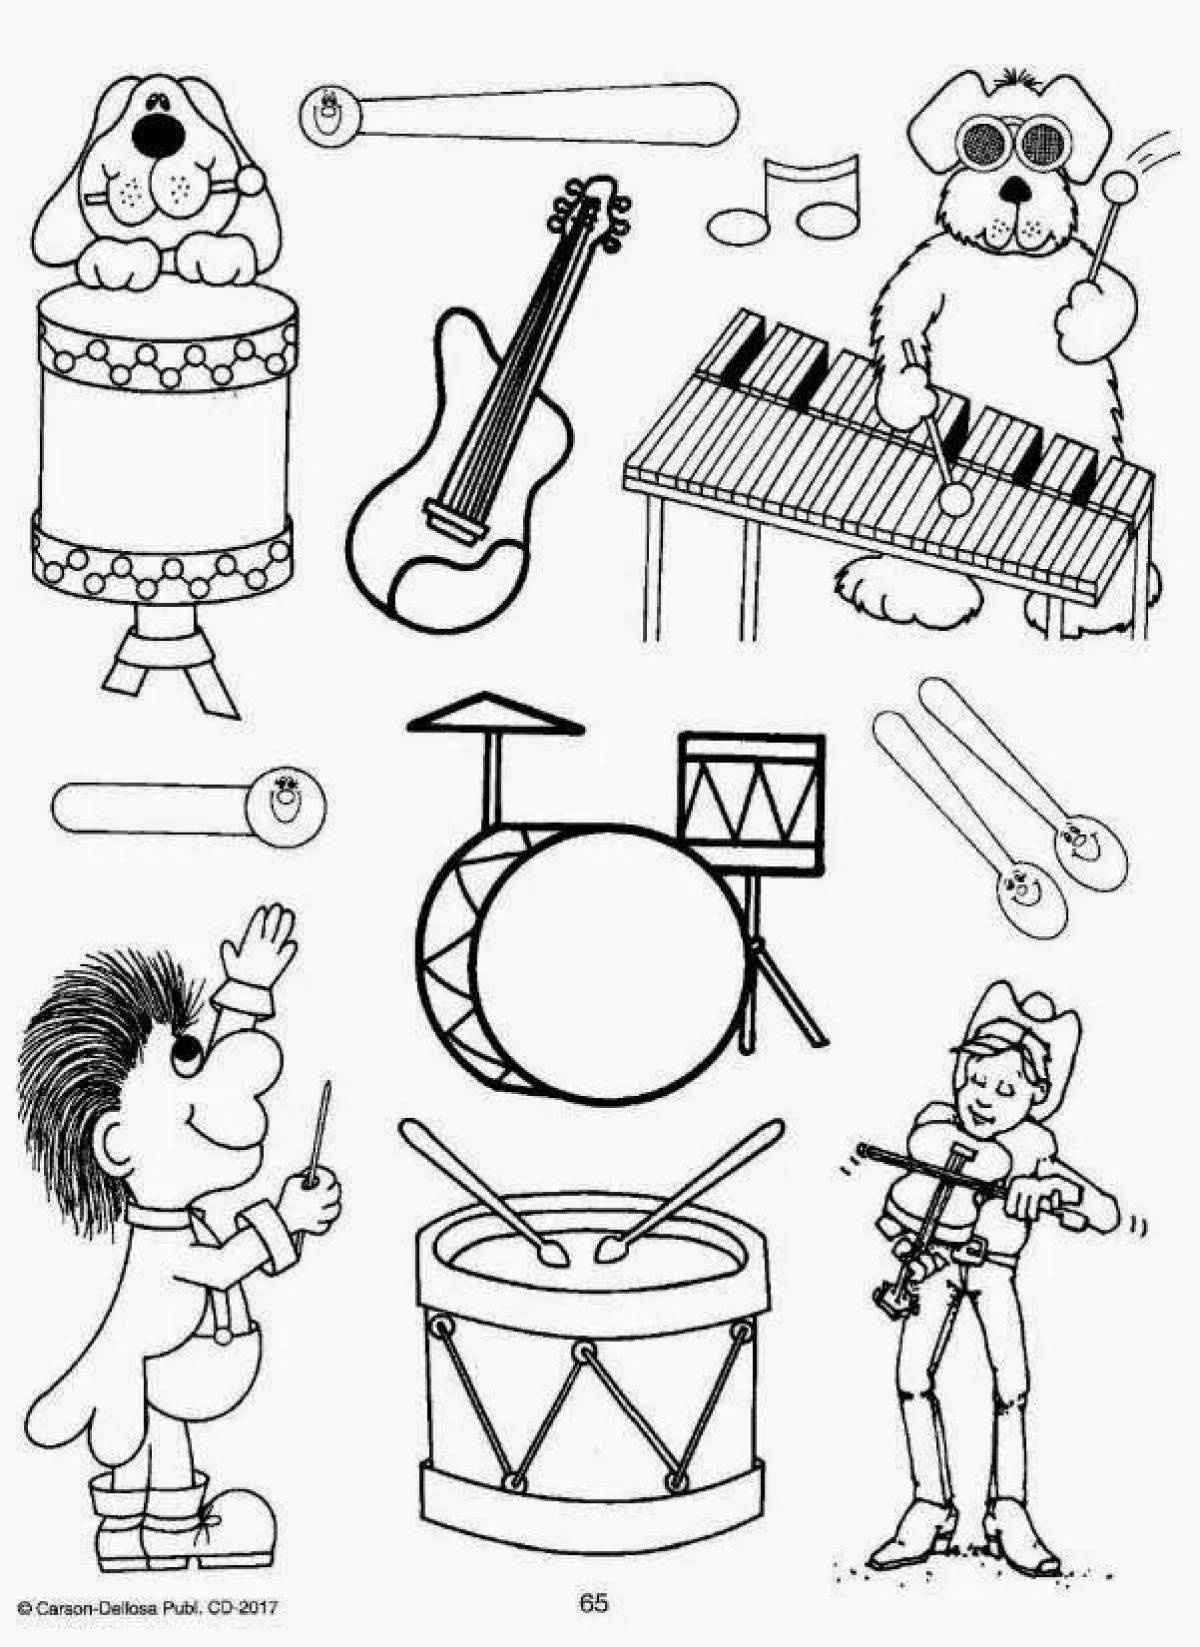 Распечатать музыкальный инструмент. Раскраска музыкальные инструменты для детей. Раскраска для малышей музыкальные инструменты. Раскраска муз инструменты. Раскрась музыкальные инструменты.